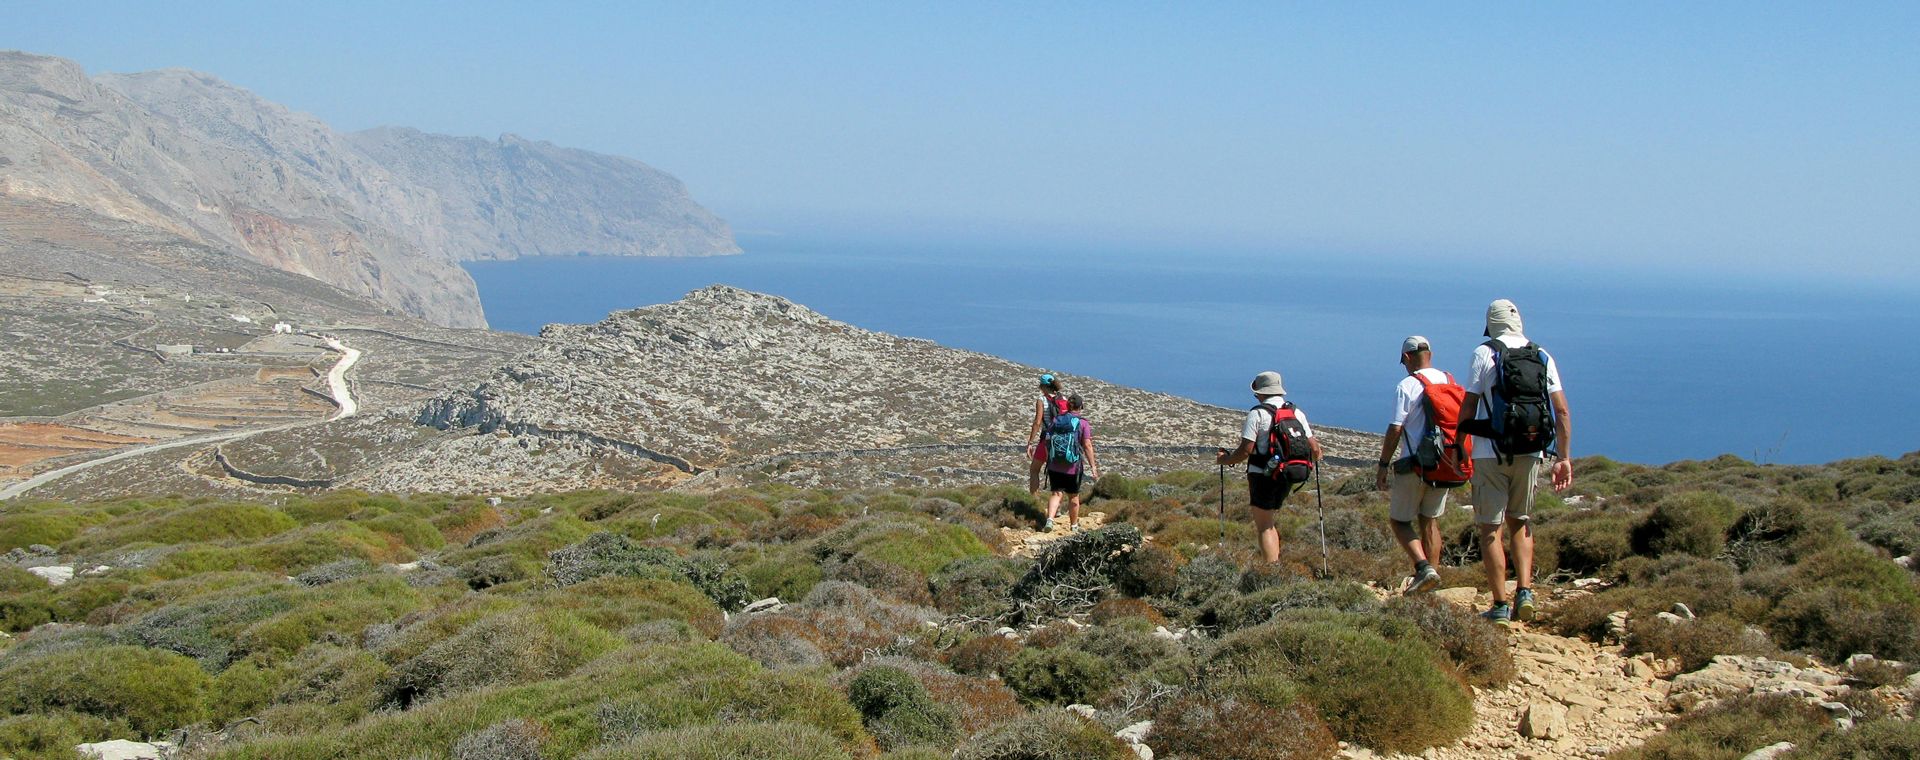 Groupe de randonneurs sur l'île d'Amorgos